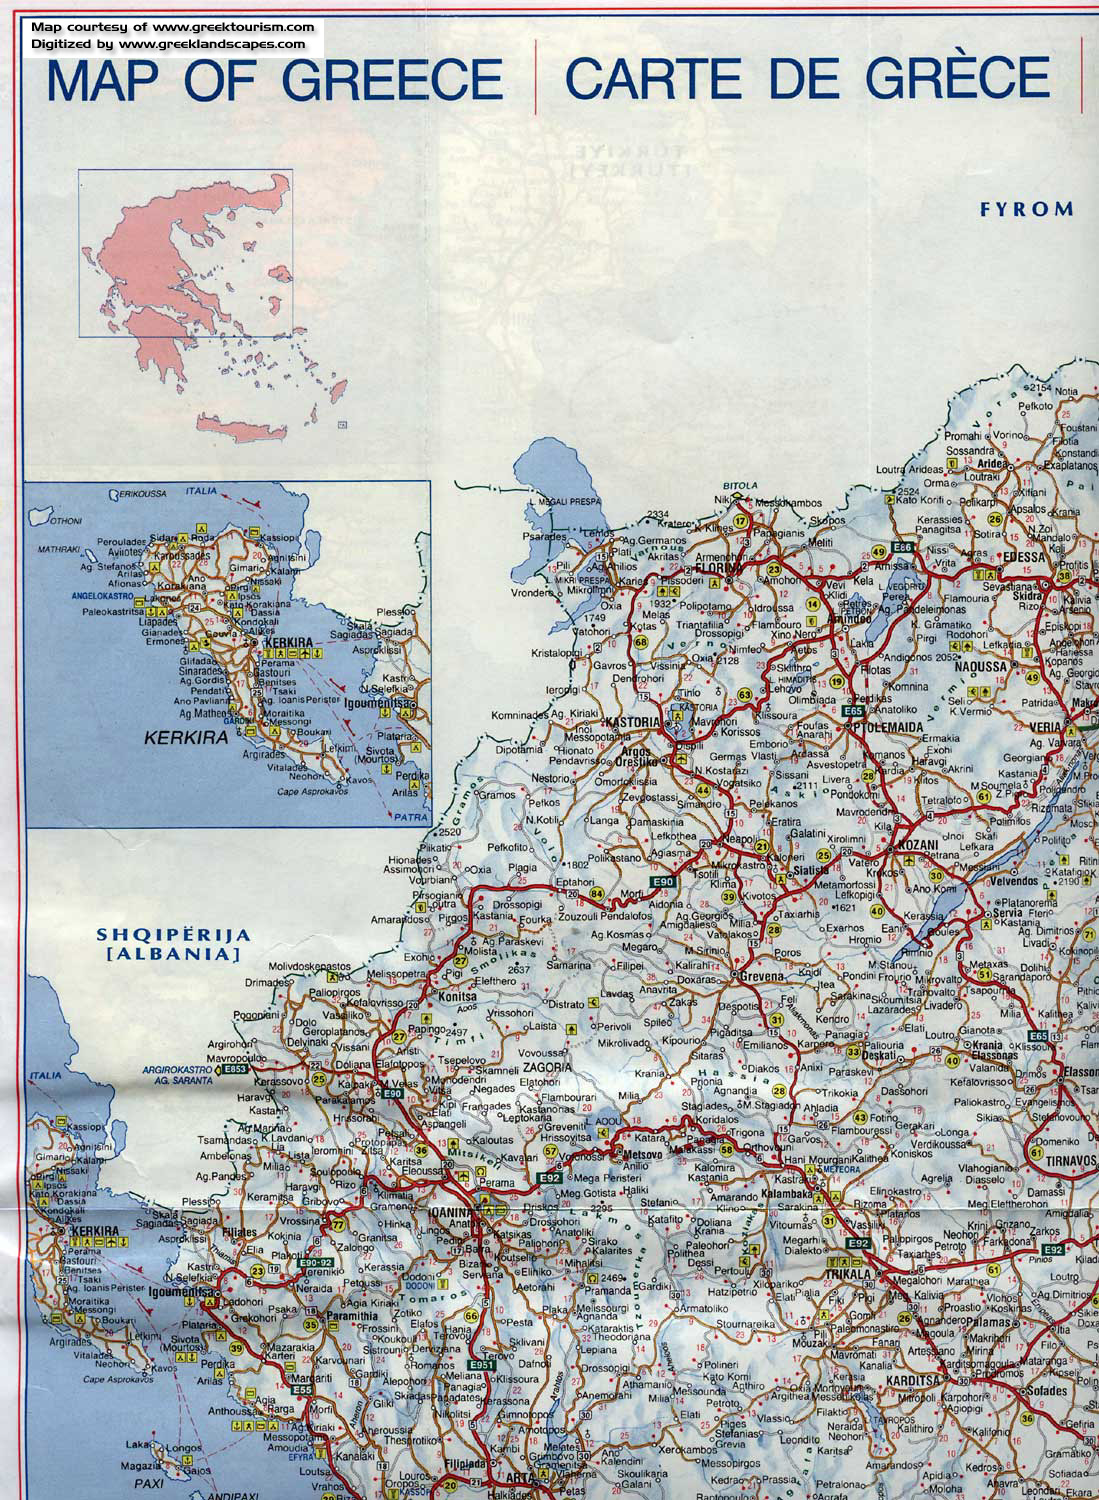 Road map of Greece - Kerkira, Igumenitsa, Trikala 